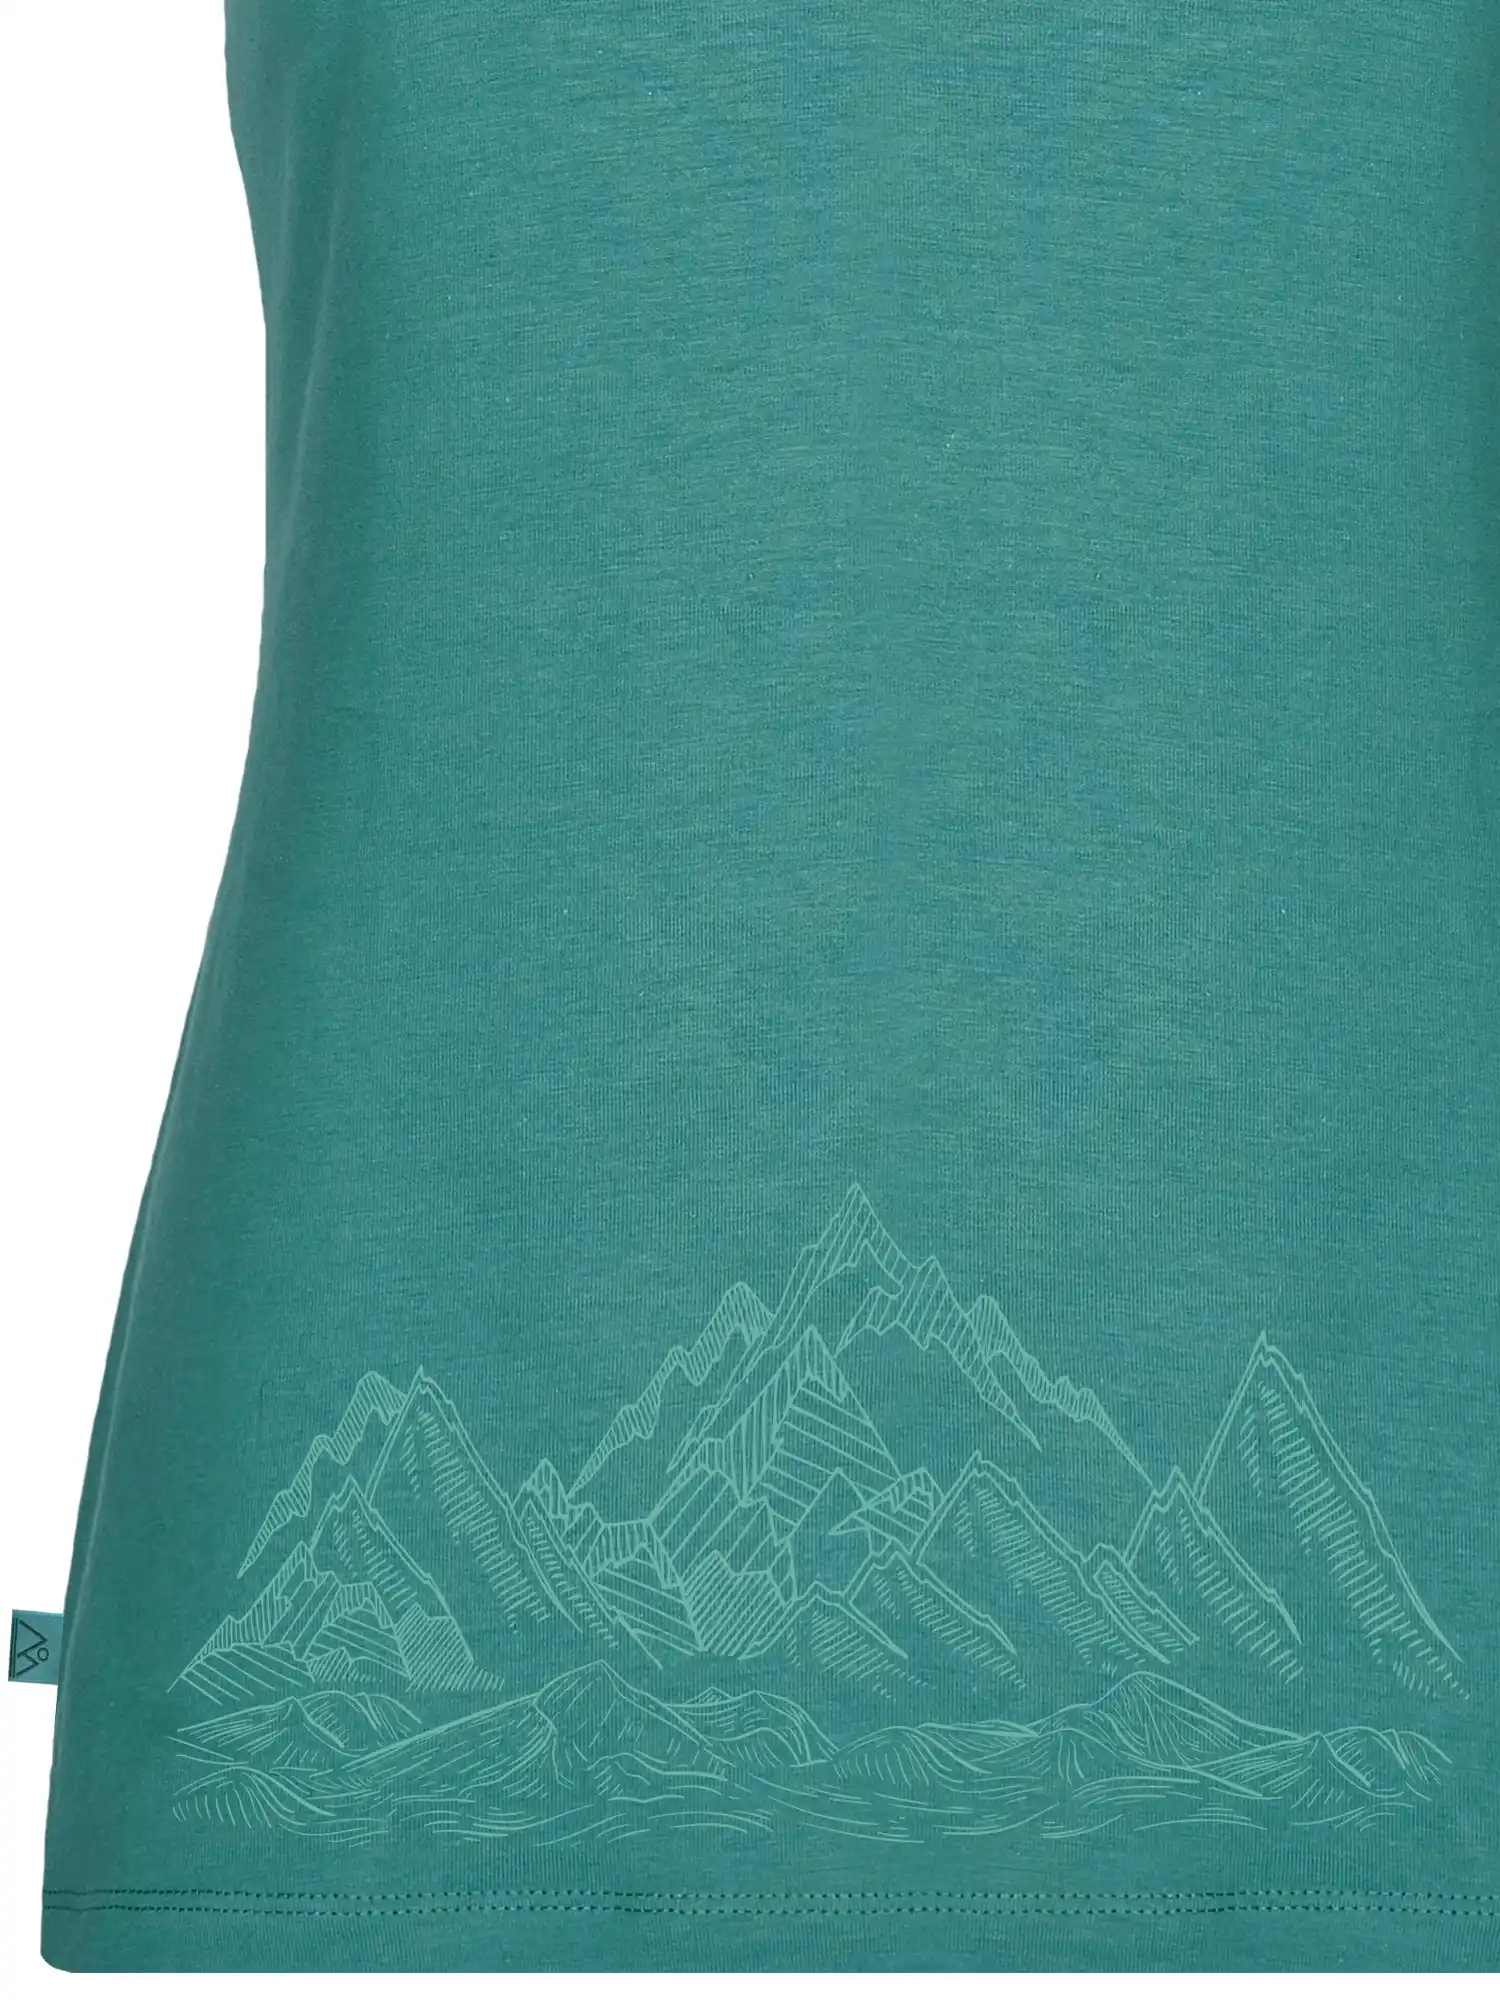 Ärmelloses Sportsshirt aus Baumwolle grün mt Bergaufdruck